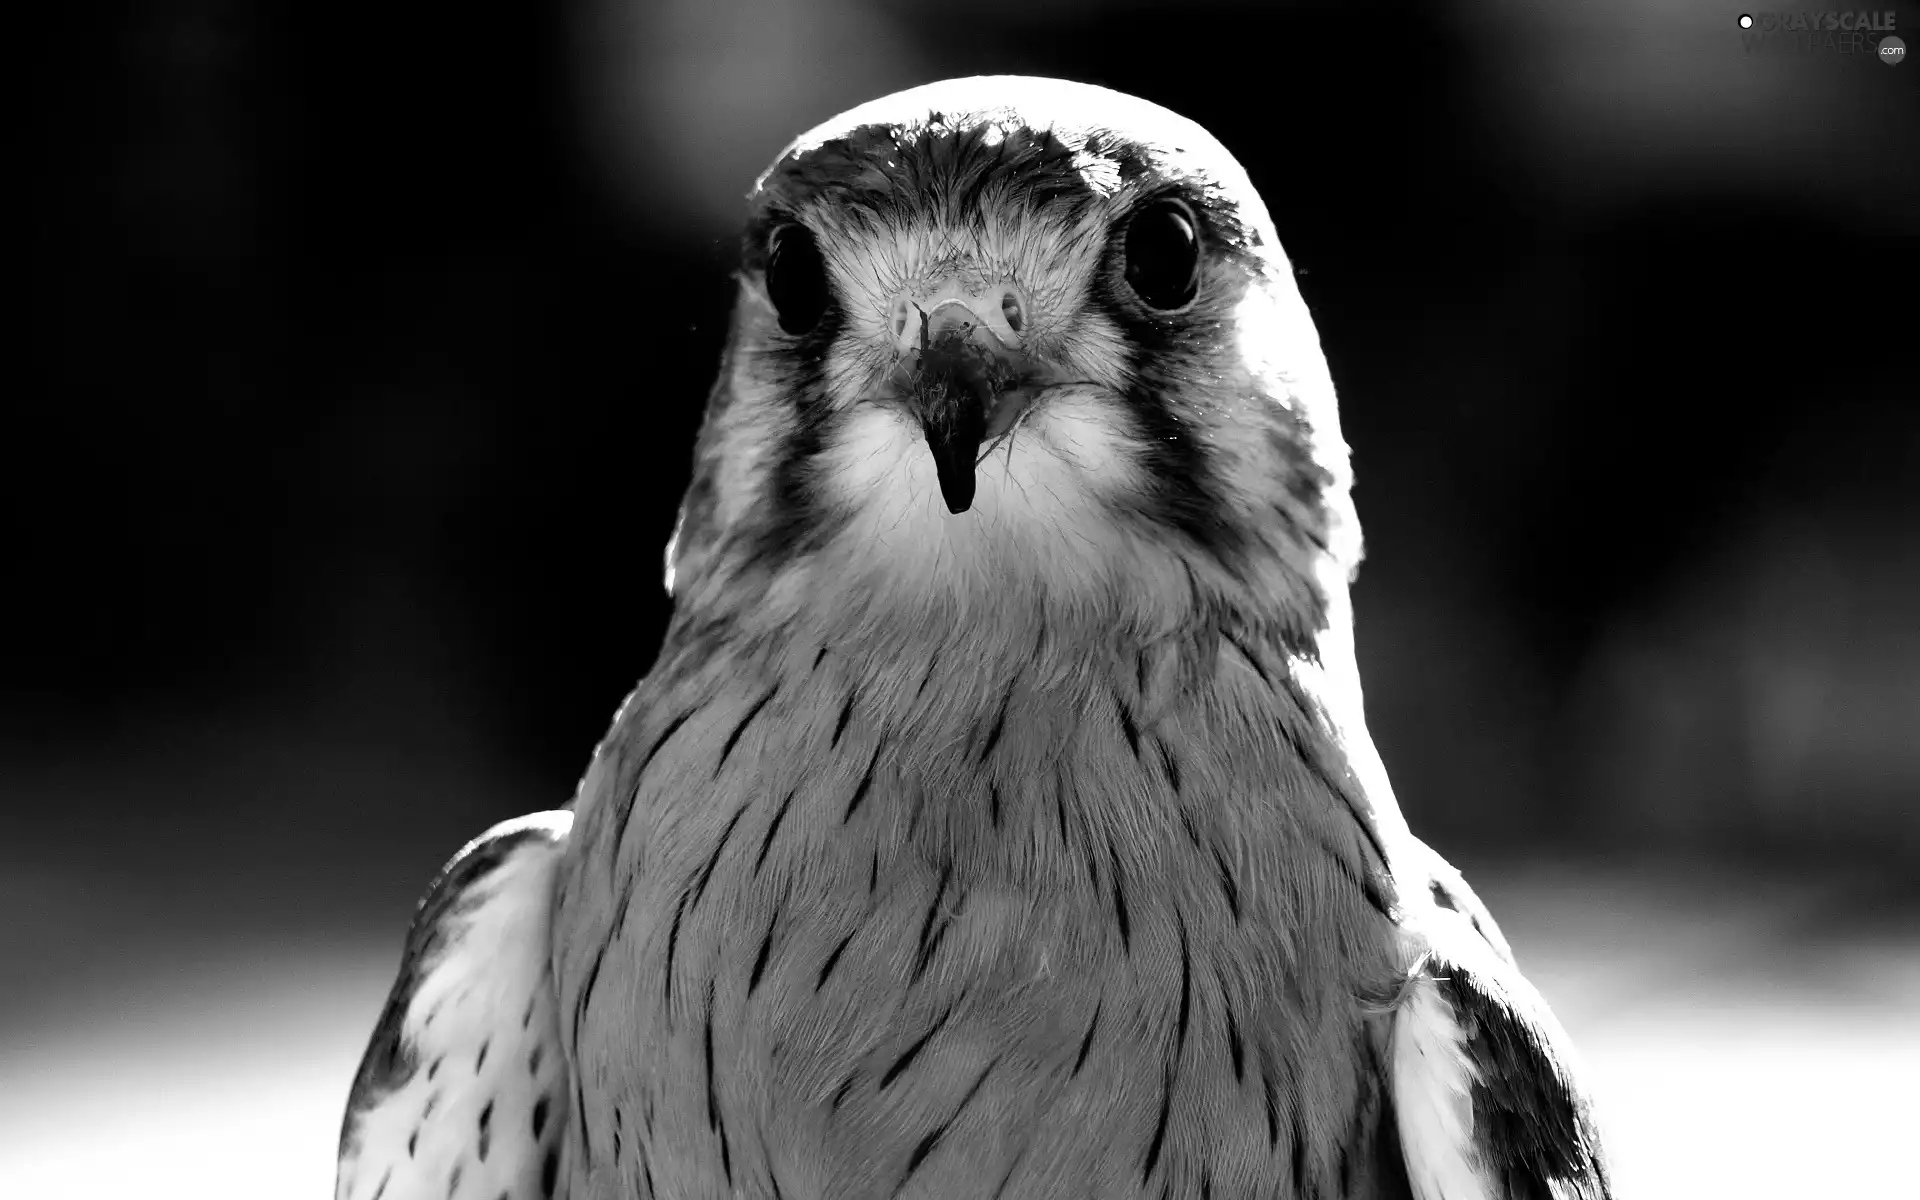 Bird, falcon